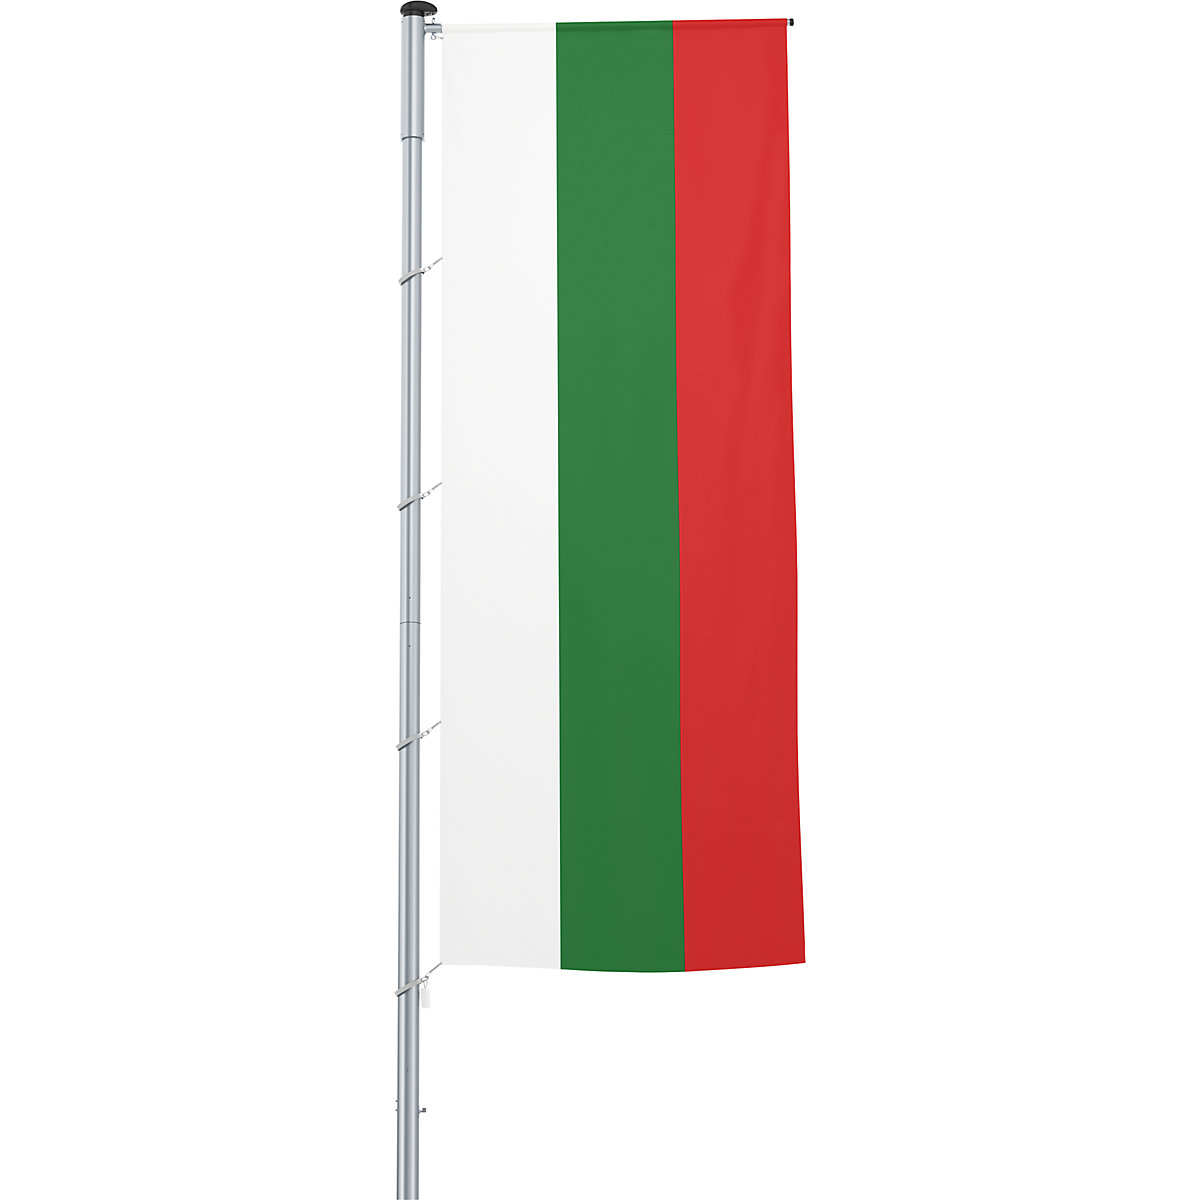 Vlajka na pozdĺžne upevnenie na stožiar/národná vlajka – Mannus, formát 1,2 x 3 m, Bulharsko-5